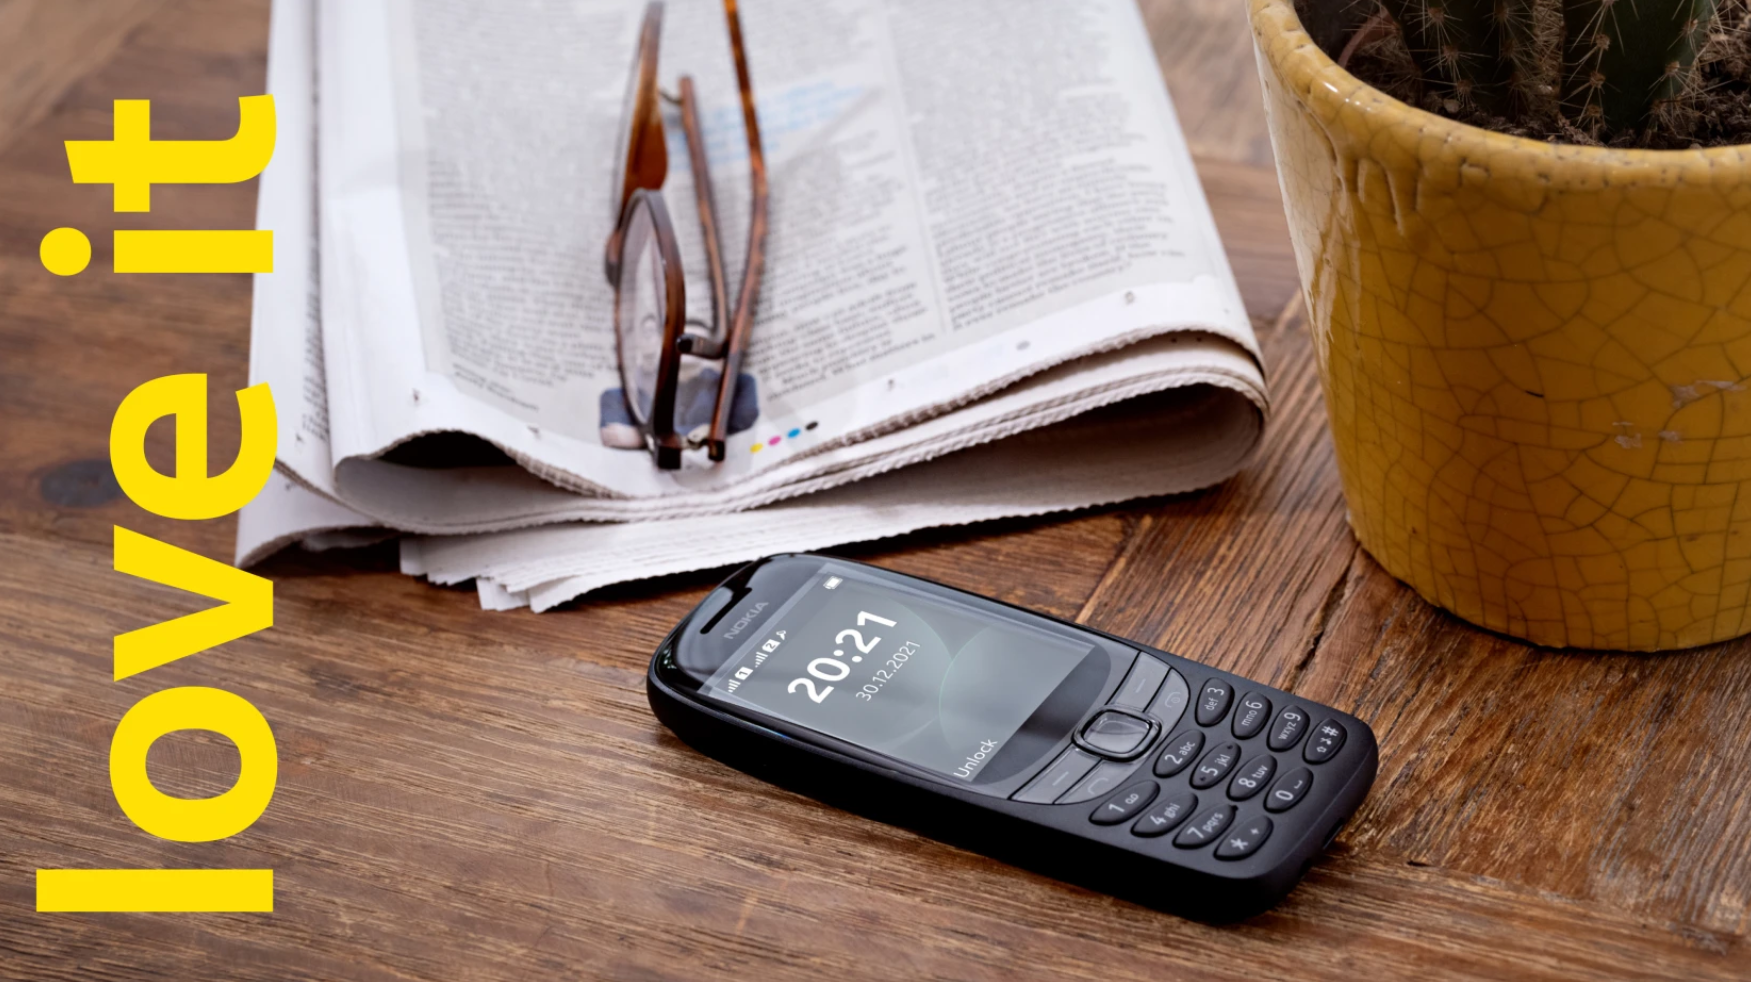 Nokia 6310 (2021) Design